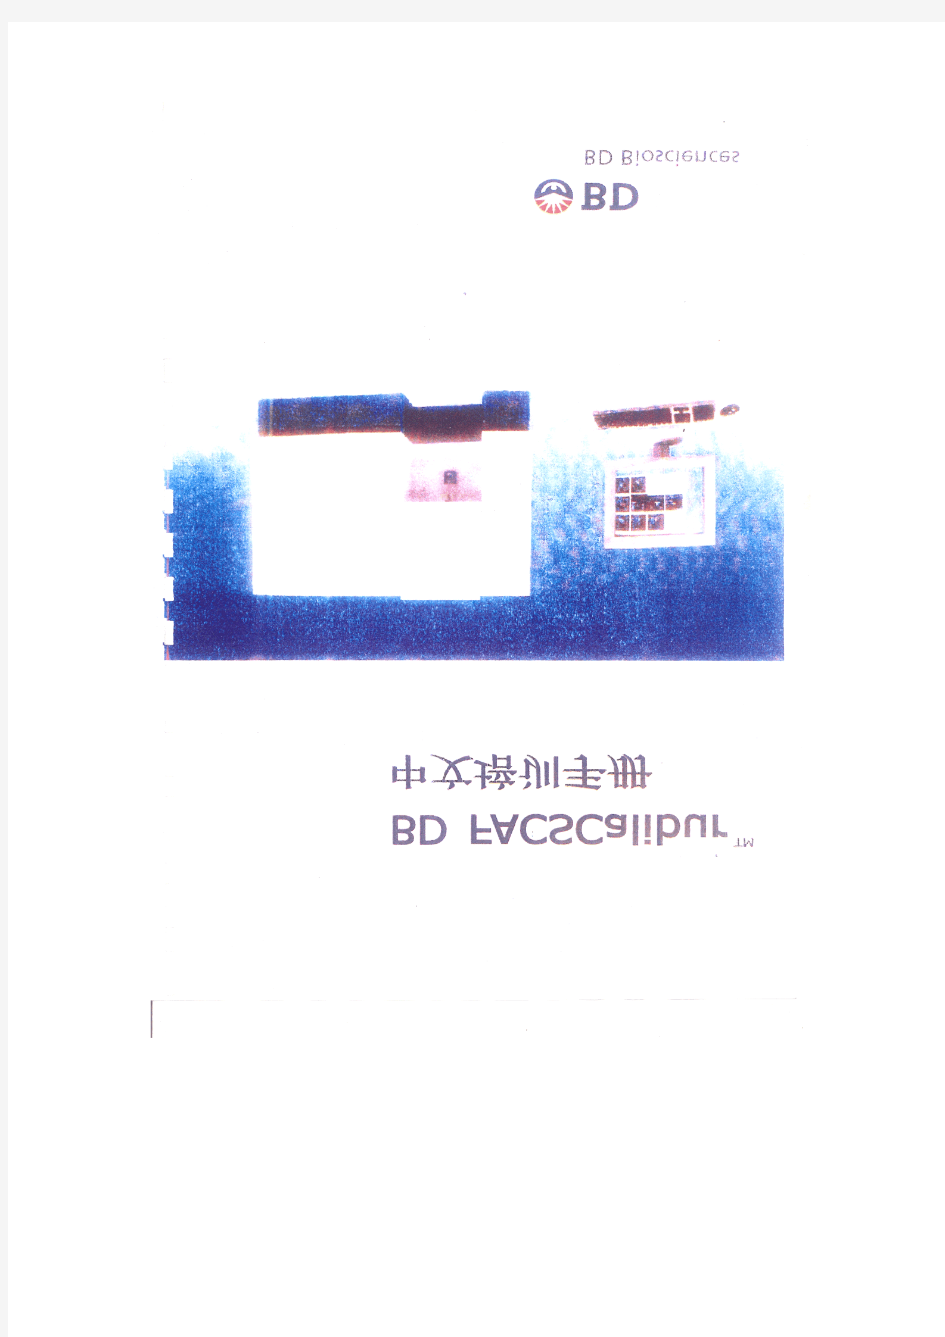 流式细胞仪中文操作手册